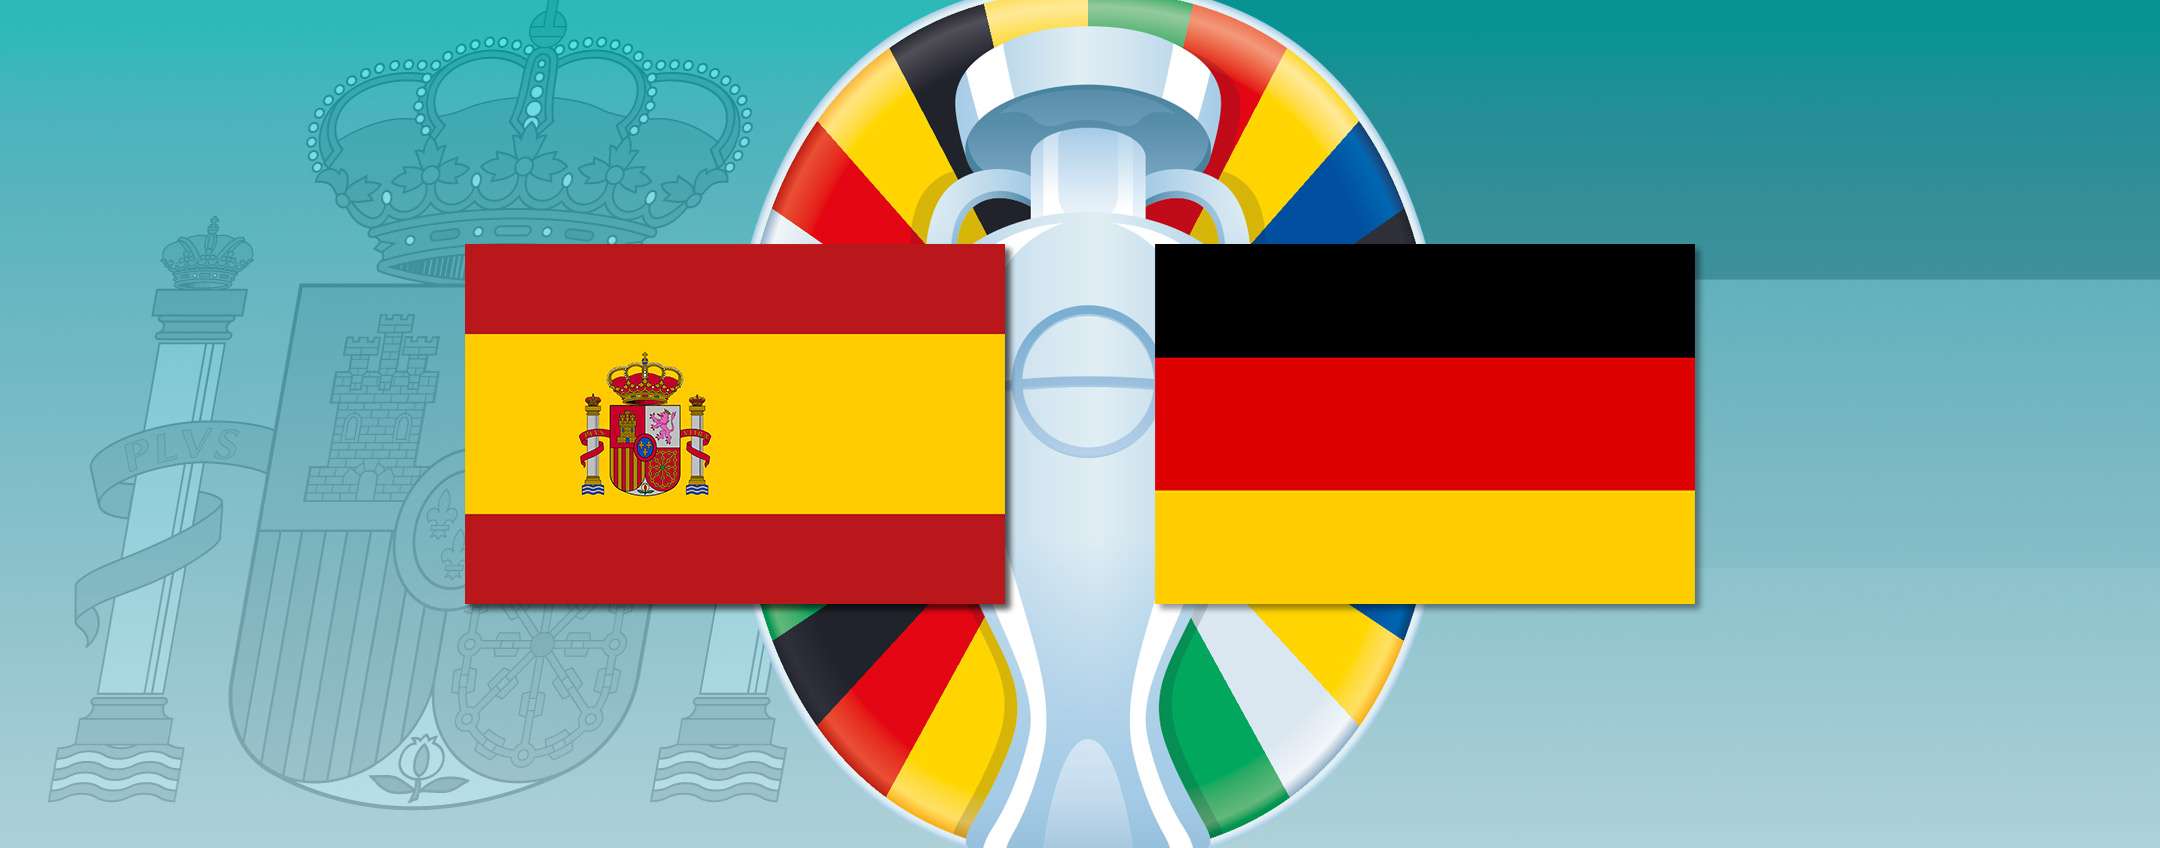 Come vedere Spagna-Germania in diretta streaming dall’estero